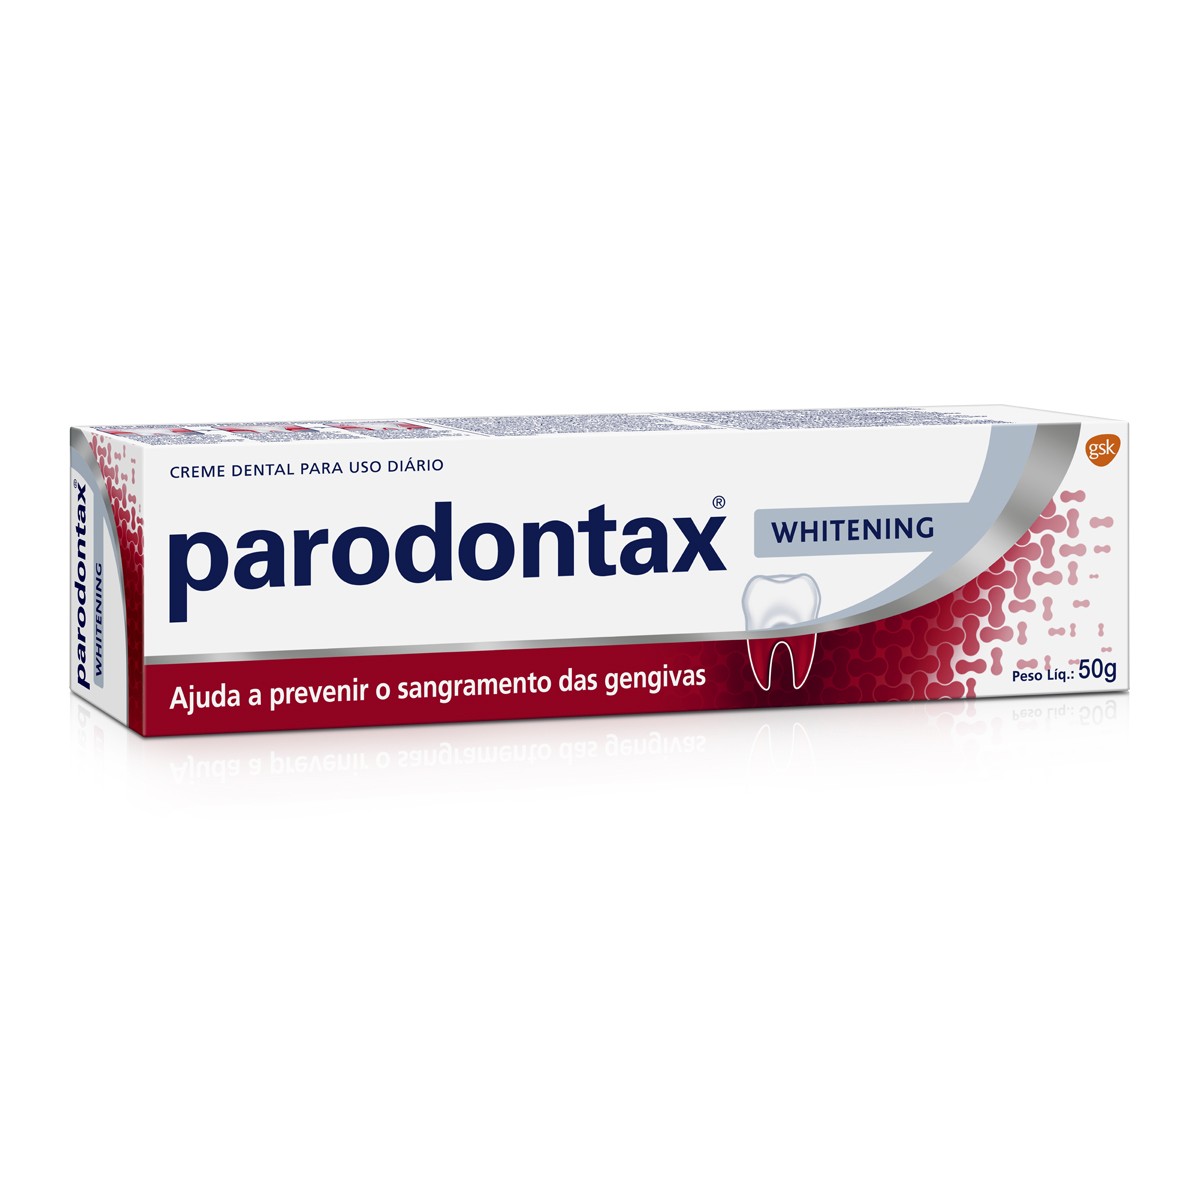 Creme Dental Parodontax Whitening para Prevenção do Sangramento das Gengivas 50g